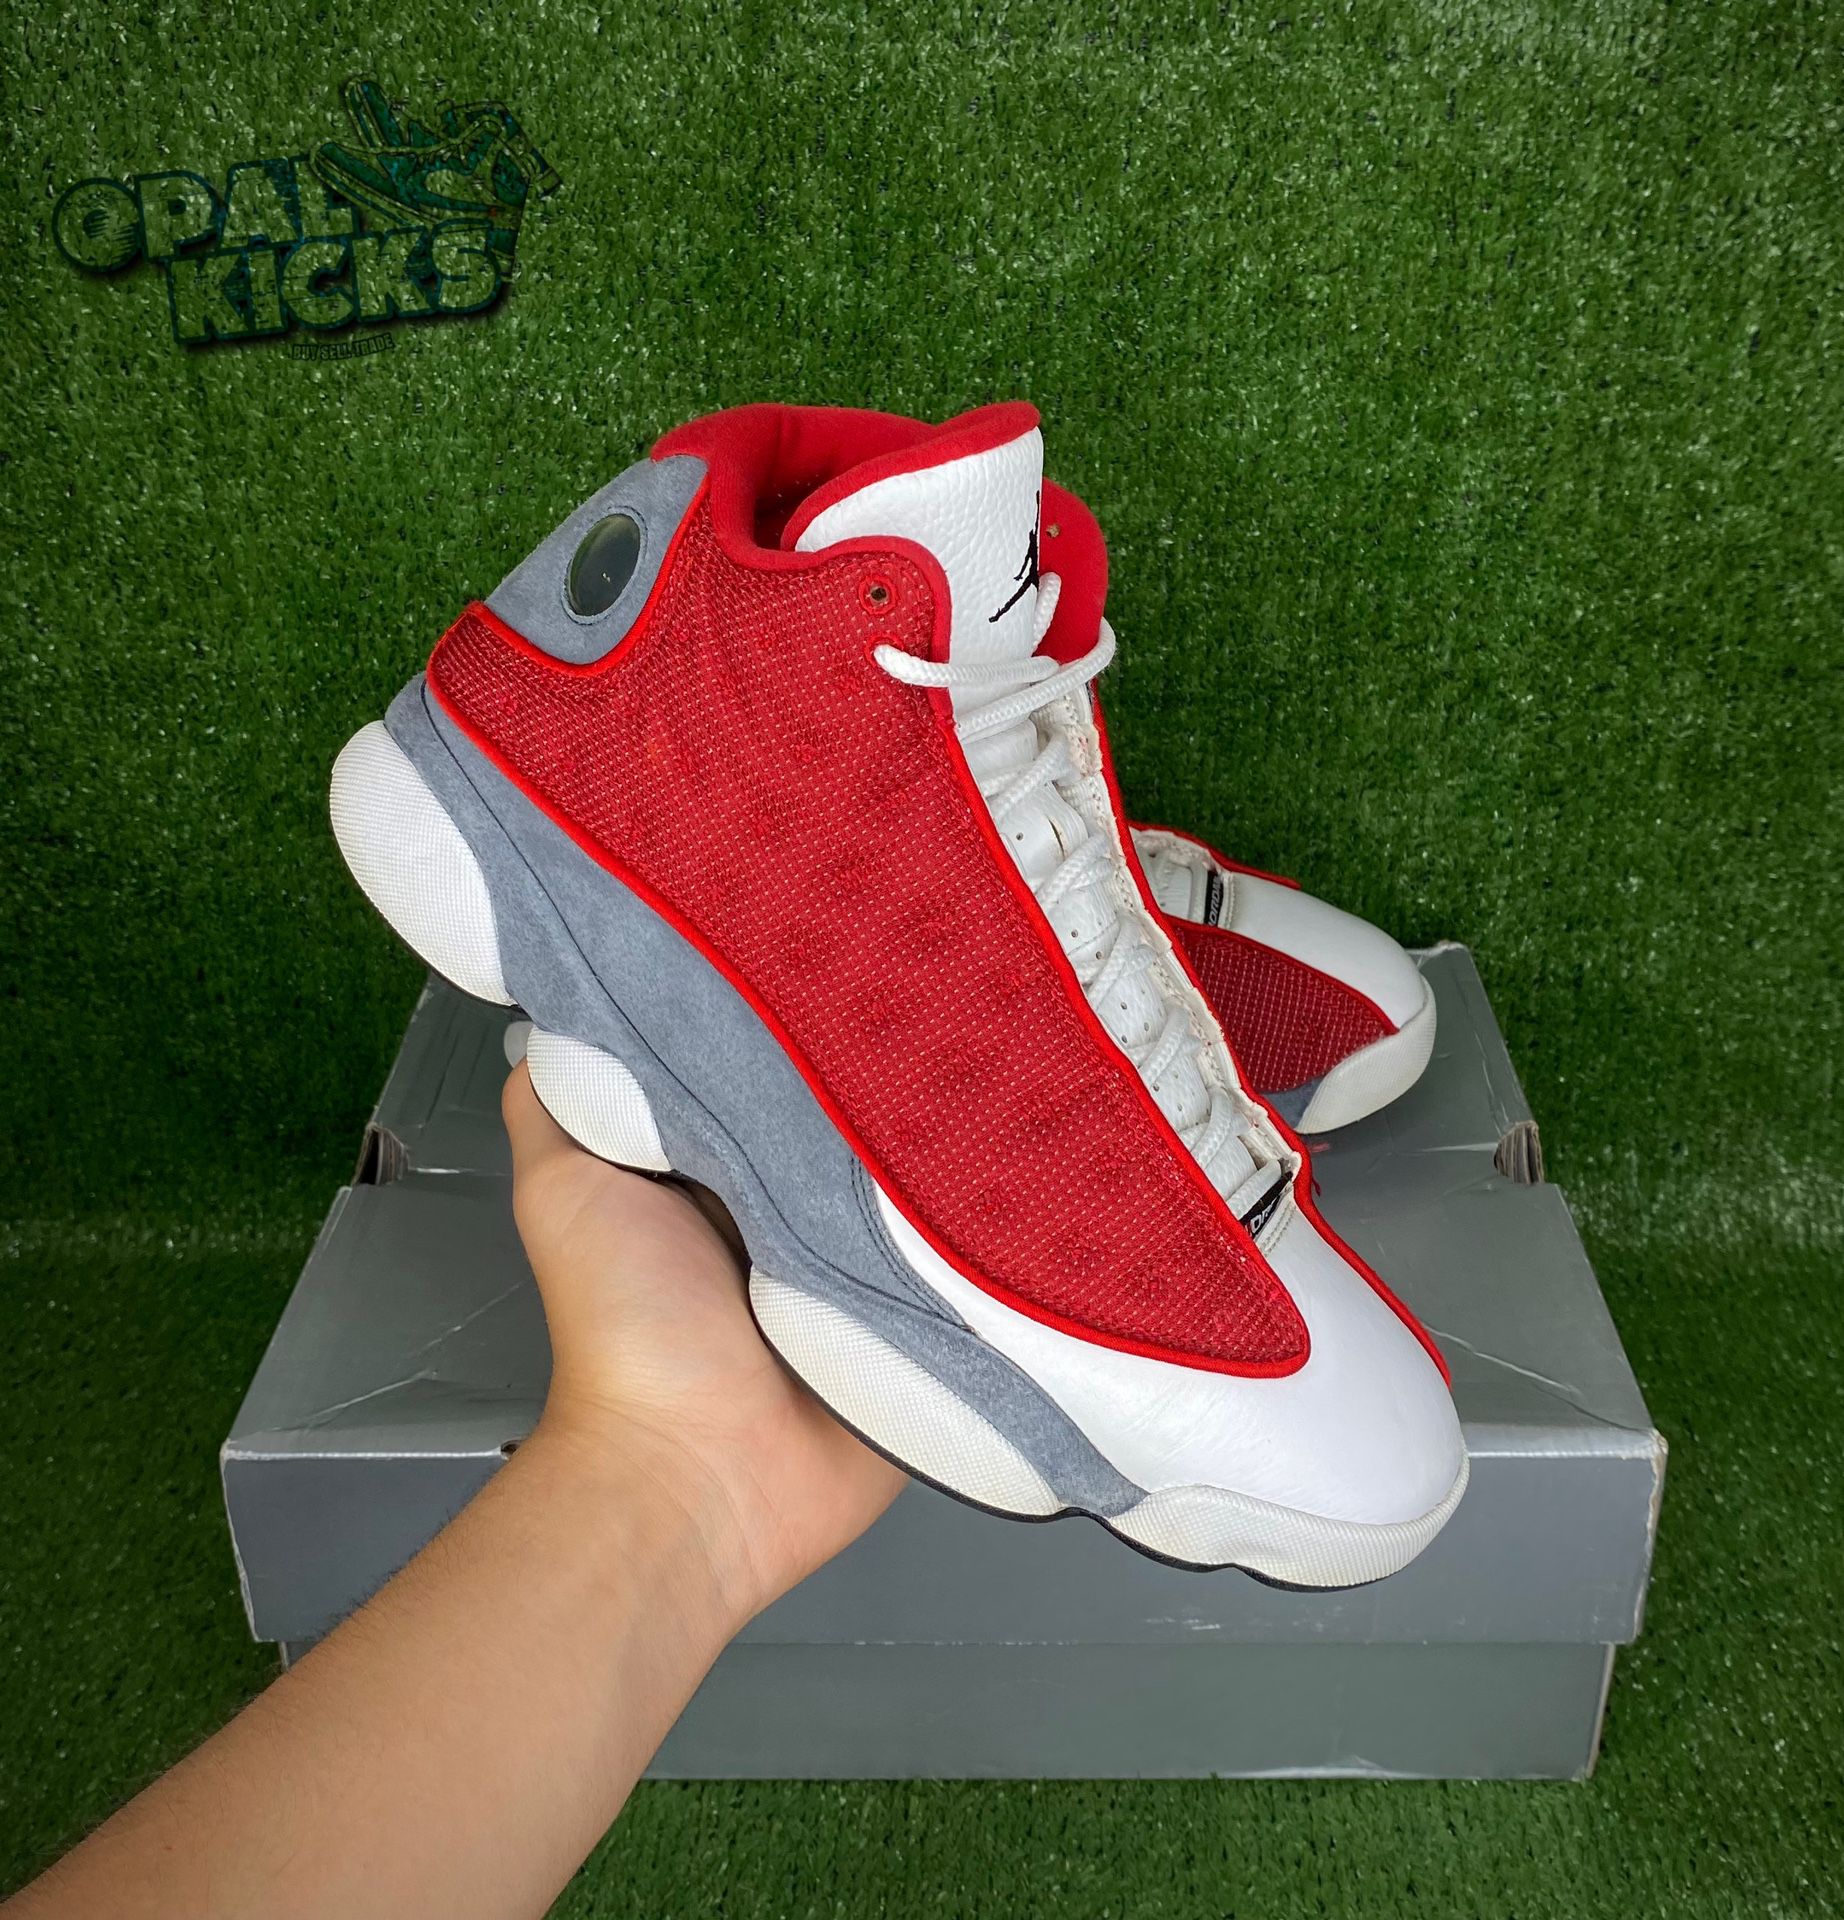 Size 10 - Jordan 13 Red/White